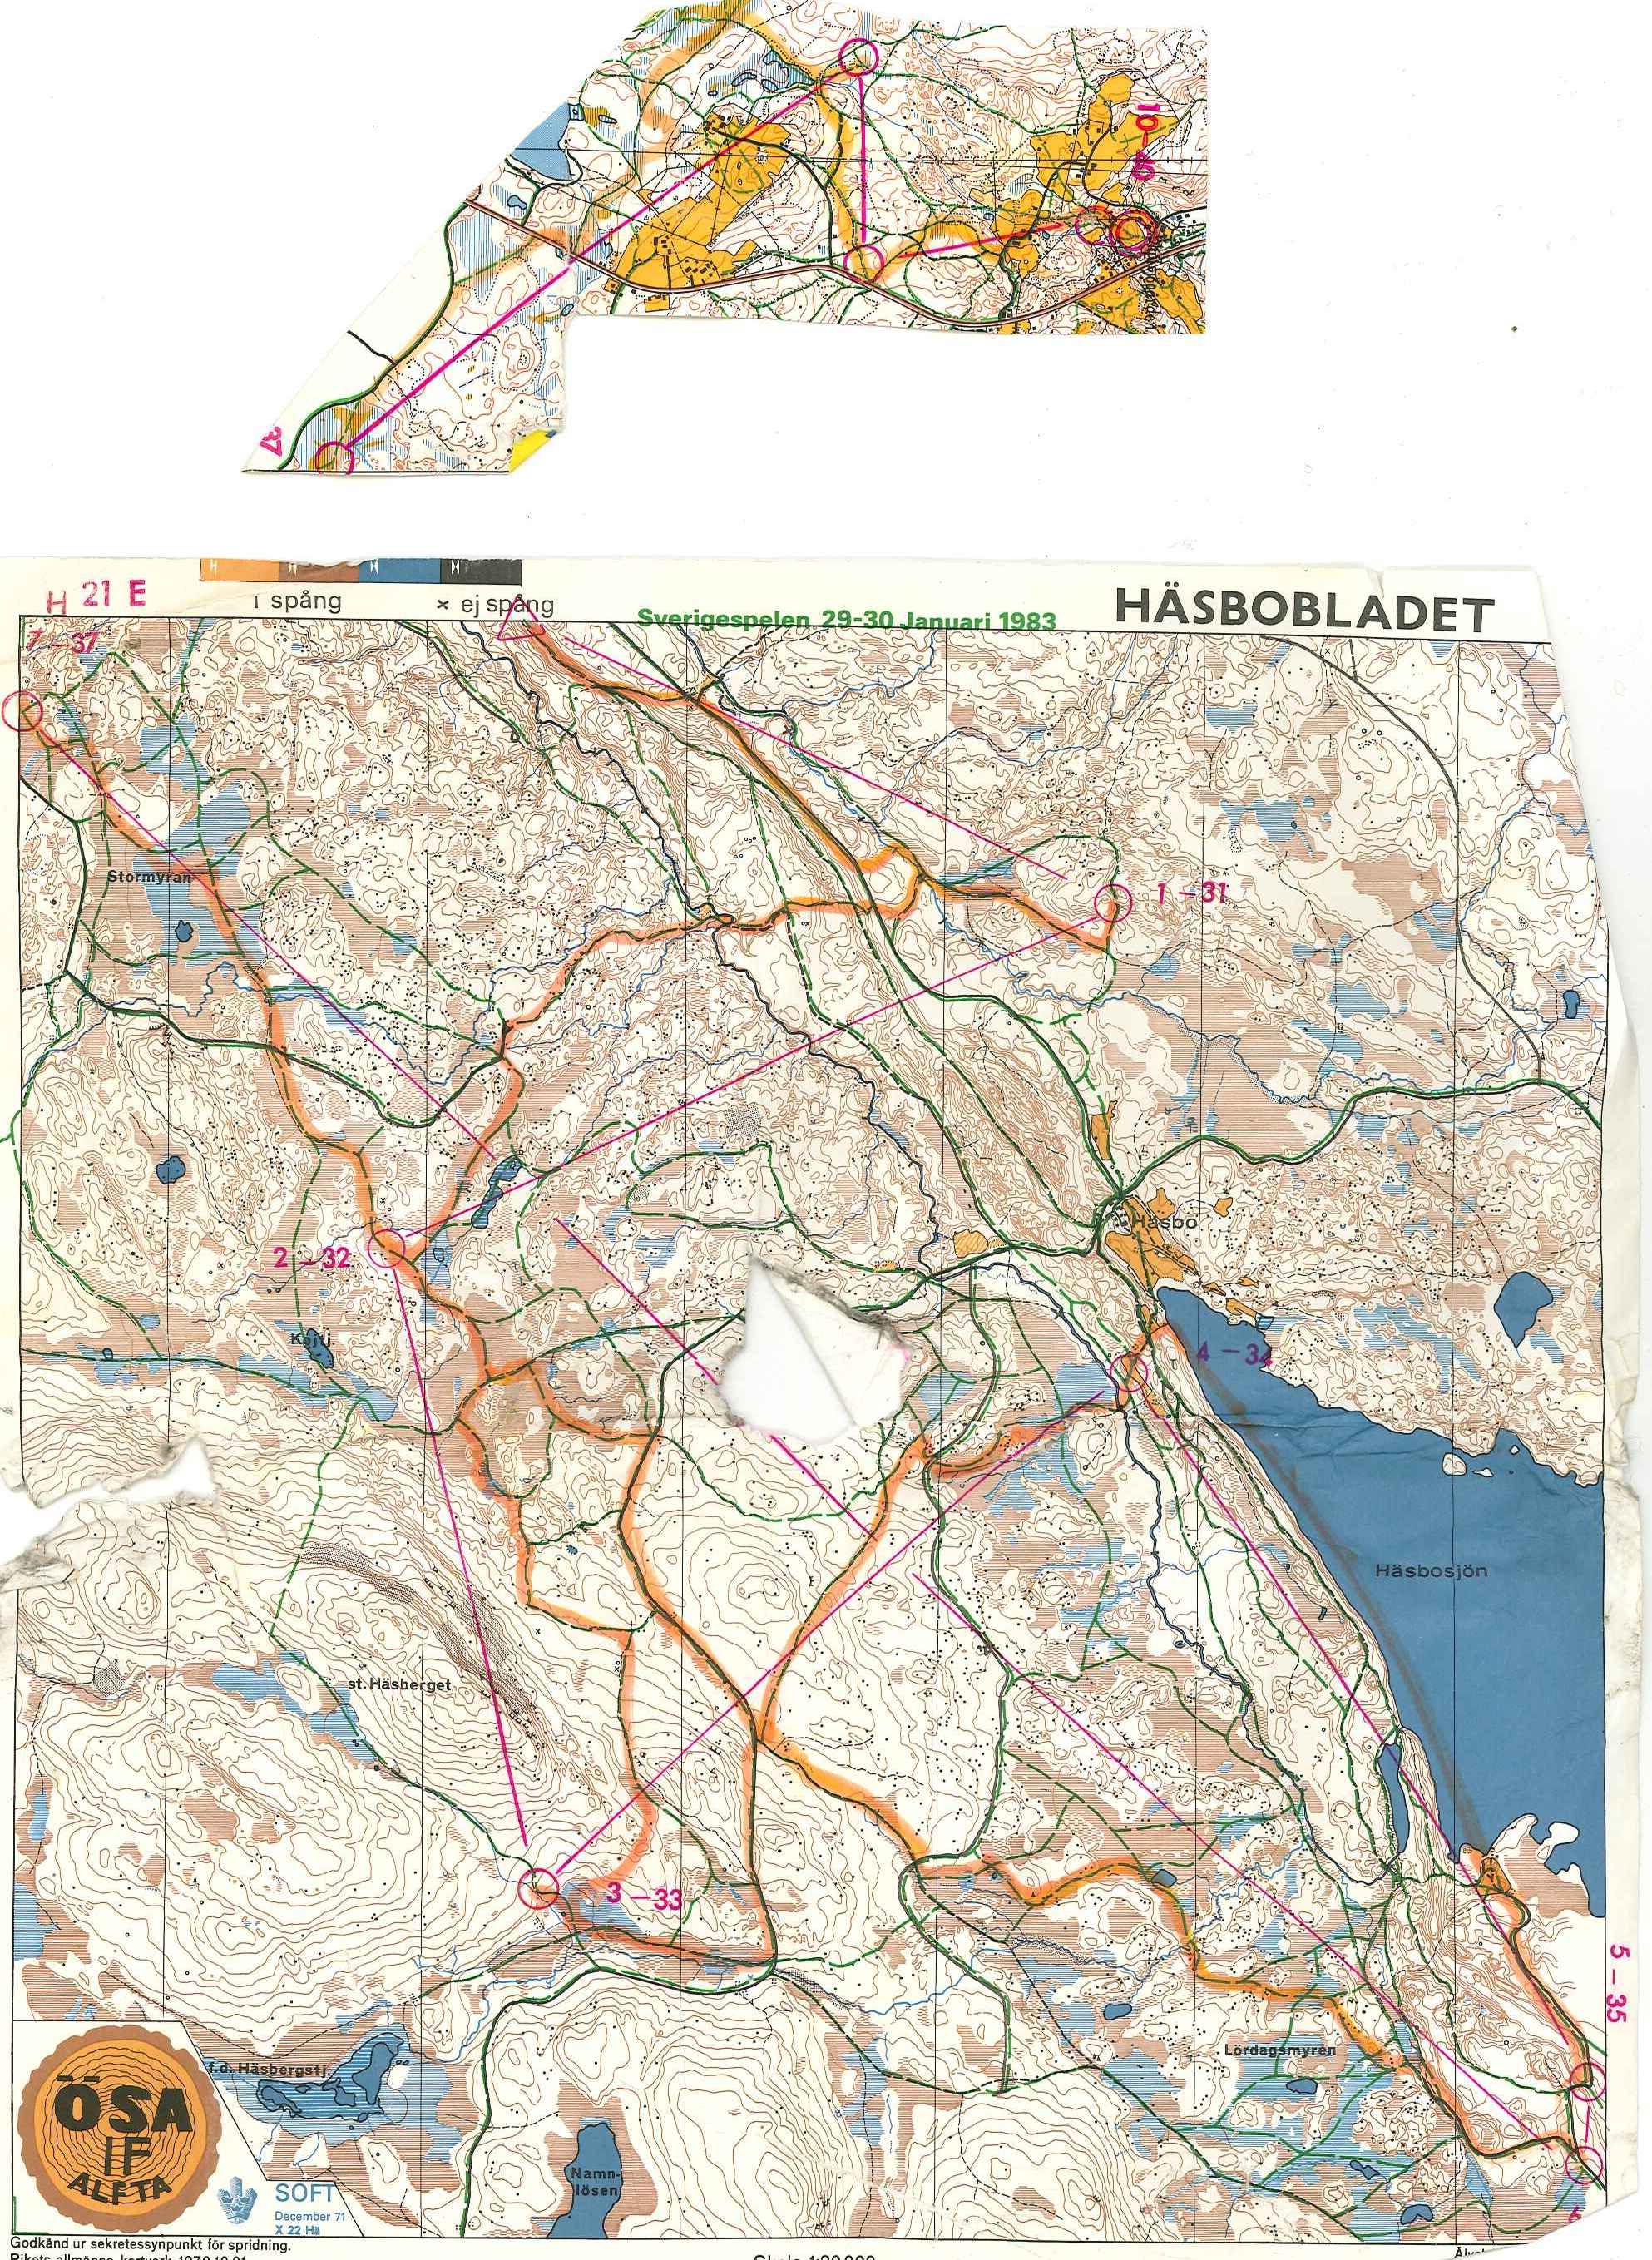 Sverigespelen skidO (29/01/1983)